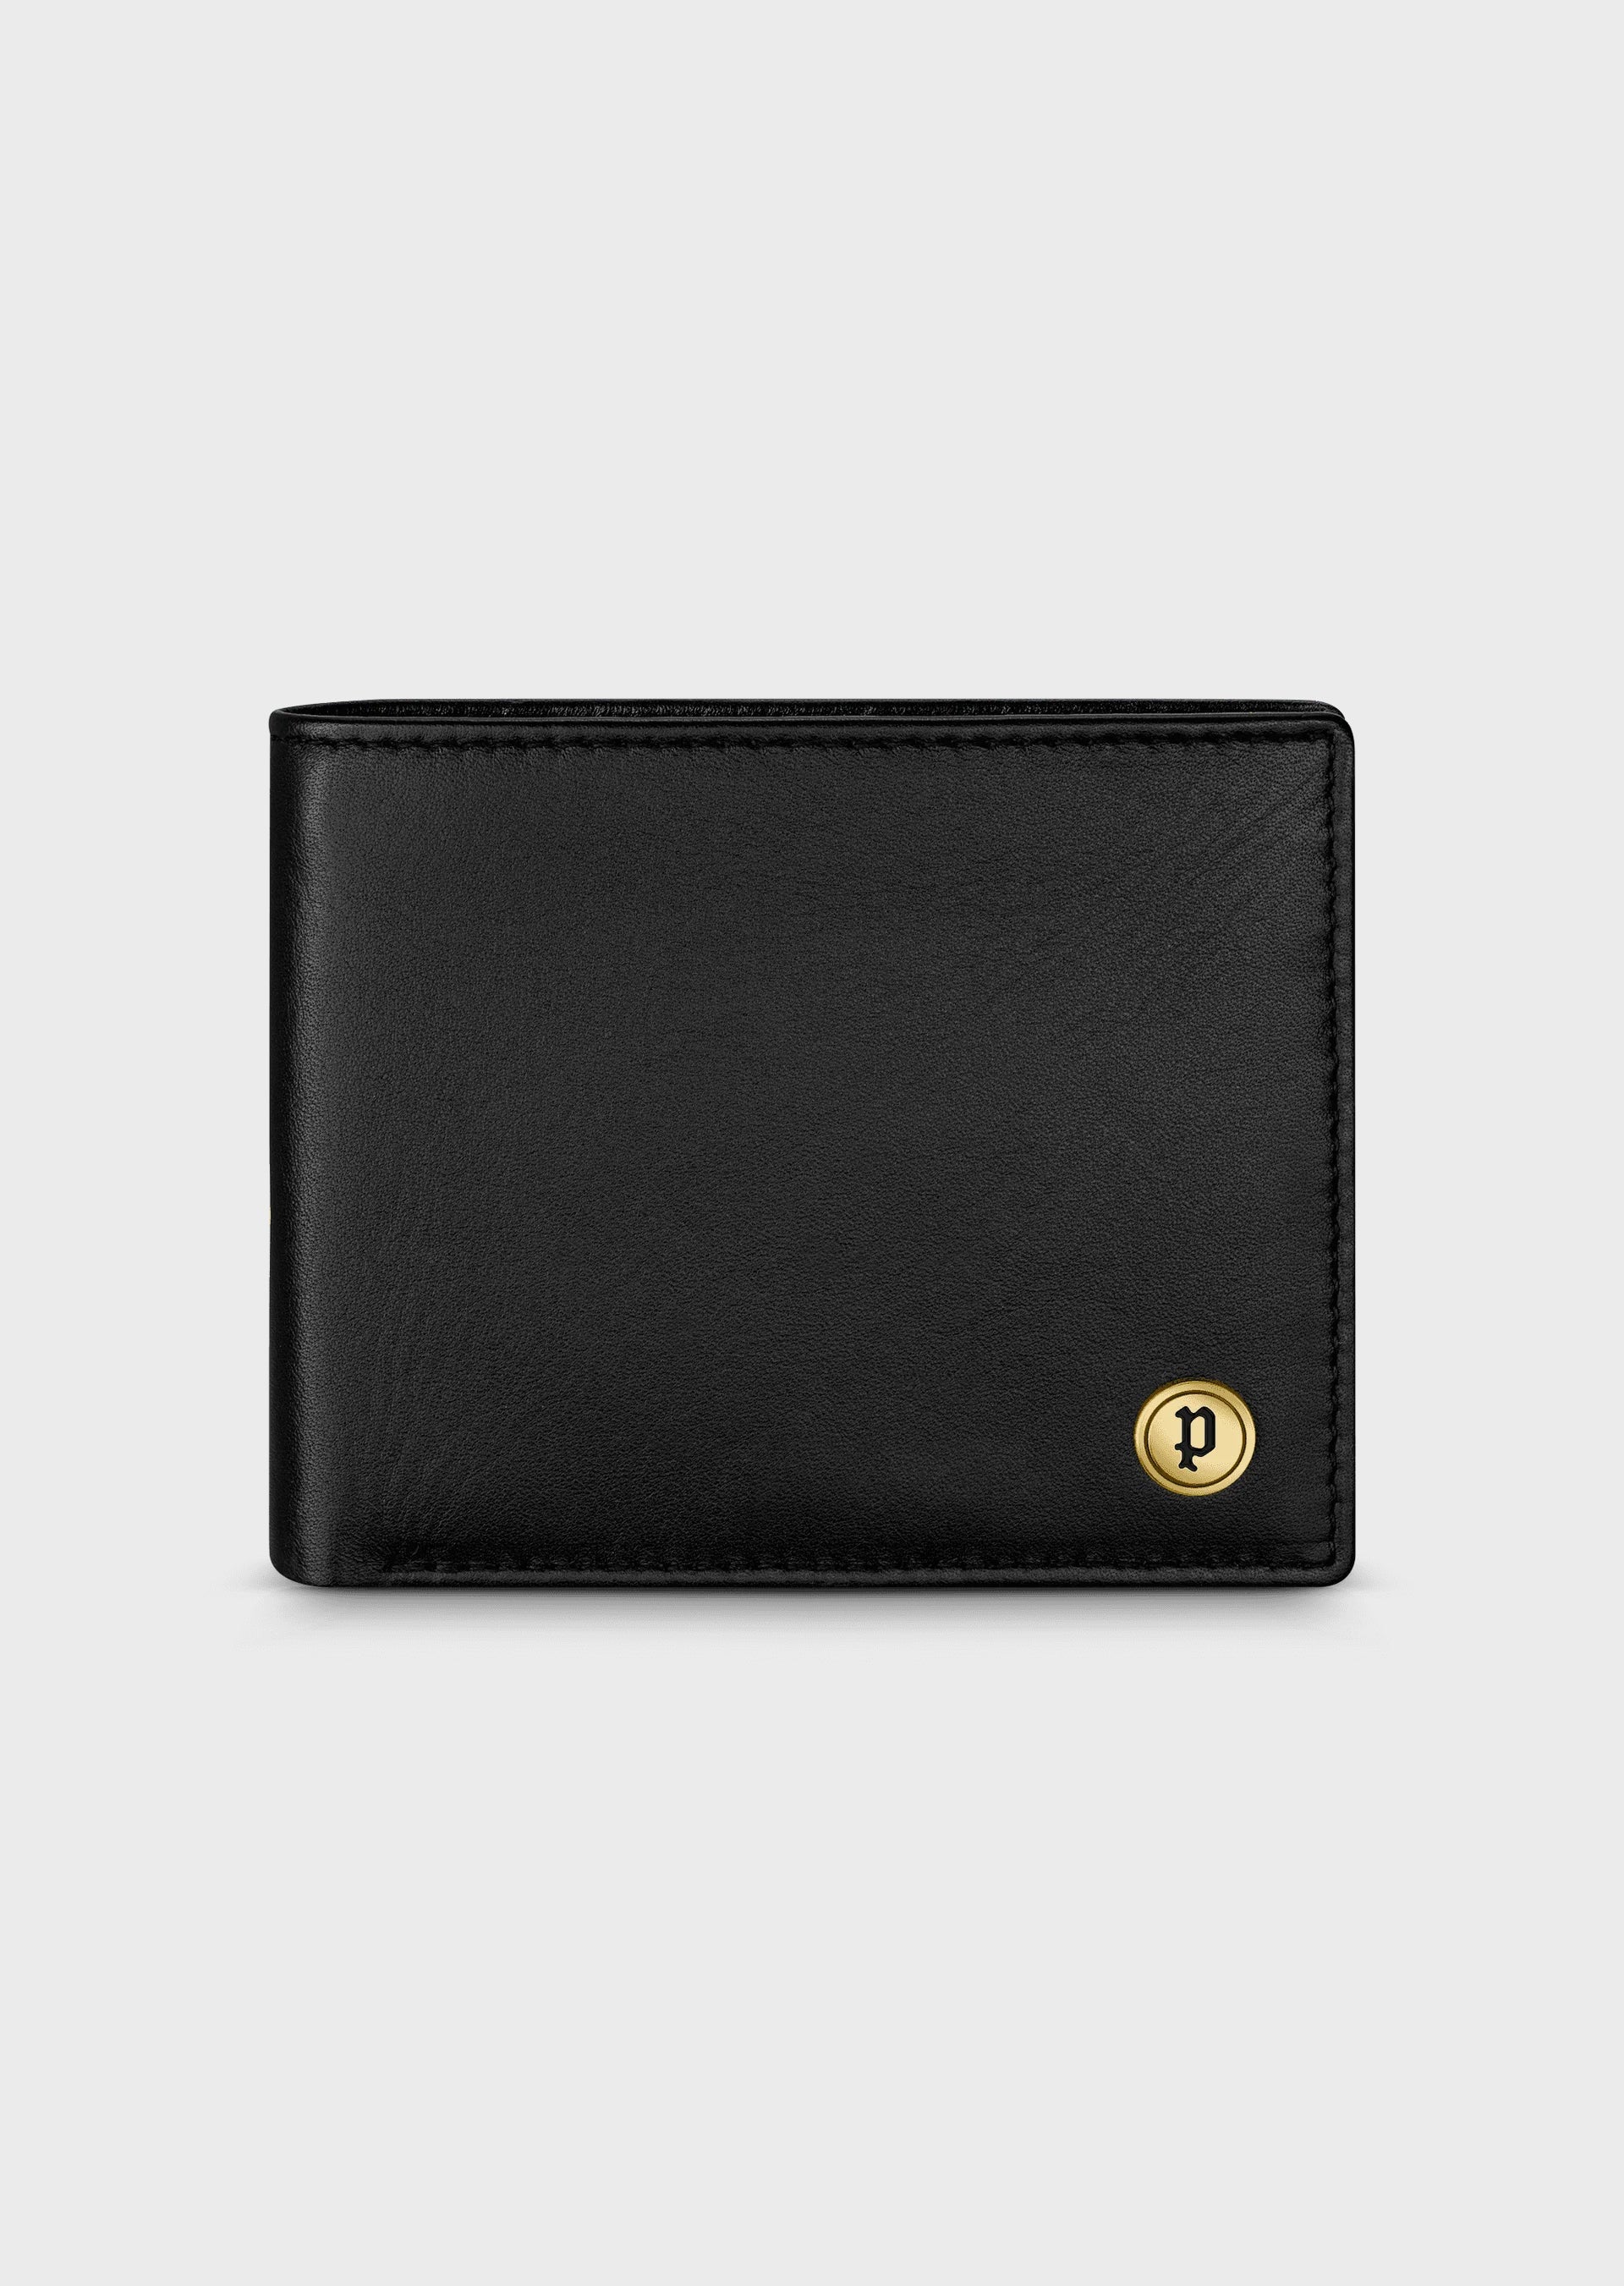 Black Bifold Men's Leather Wallet Credit Card ID Window Multi Pockets  Clutch | eBay